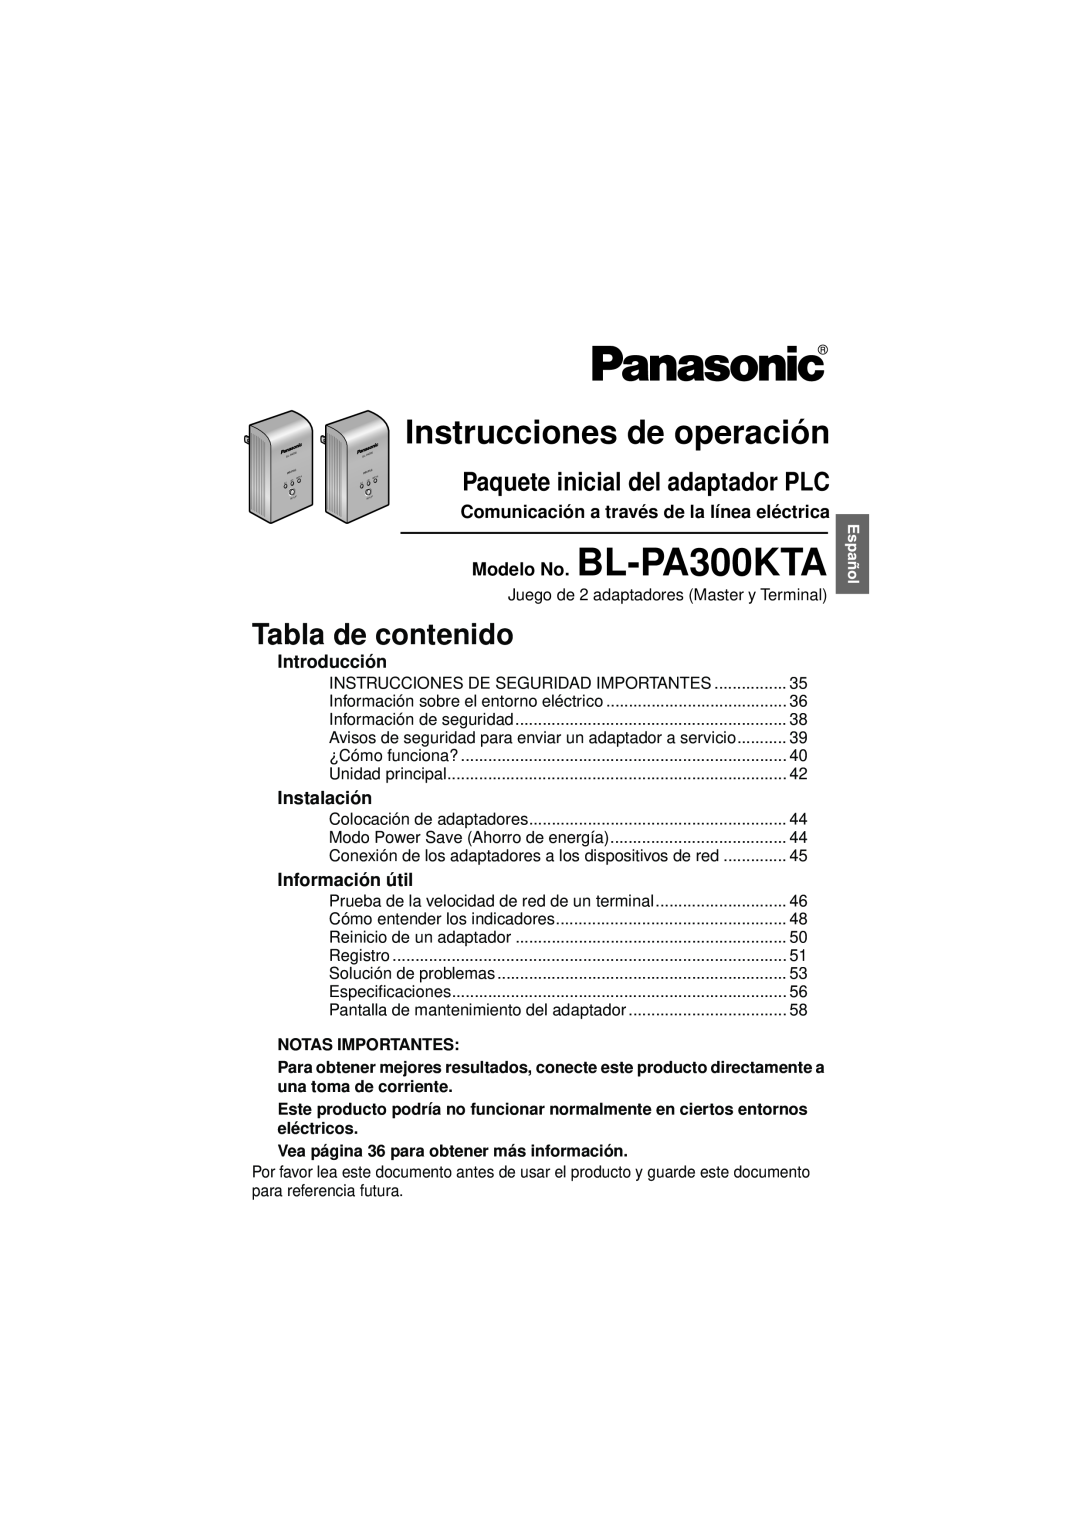 Panasonic BL-PA300KTA Instrucciones de operación, Tabla de contenido, Paquete inicial del adaptador PLC, Introducción 